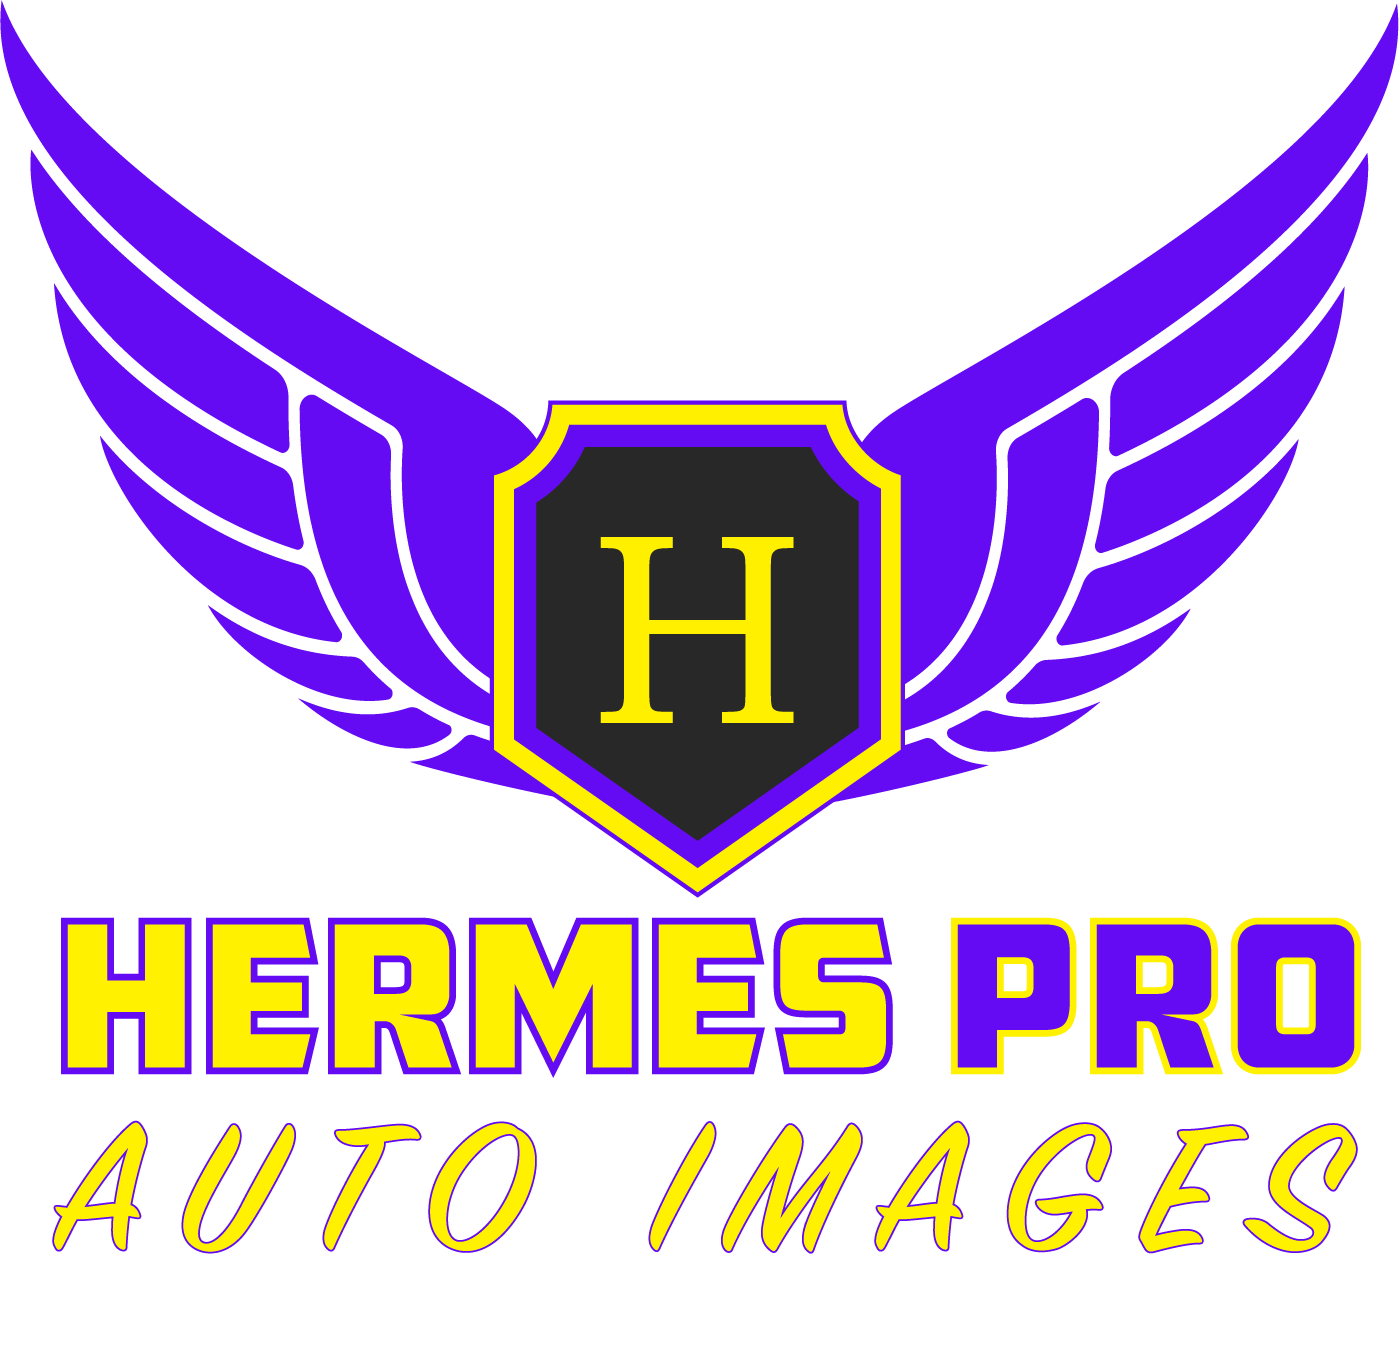 HERMES PRO AUTO IMAGES